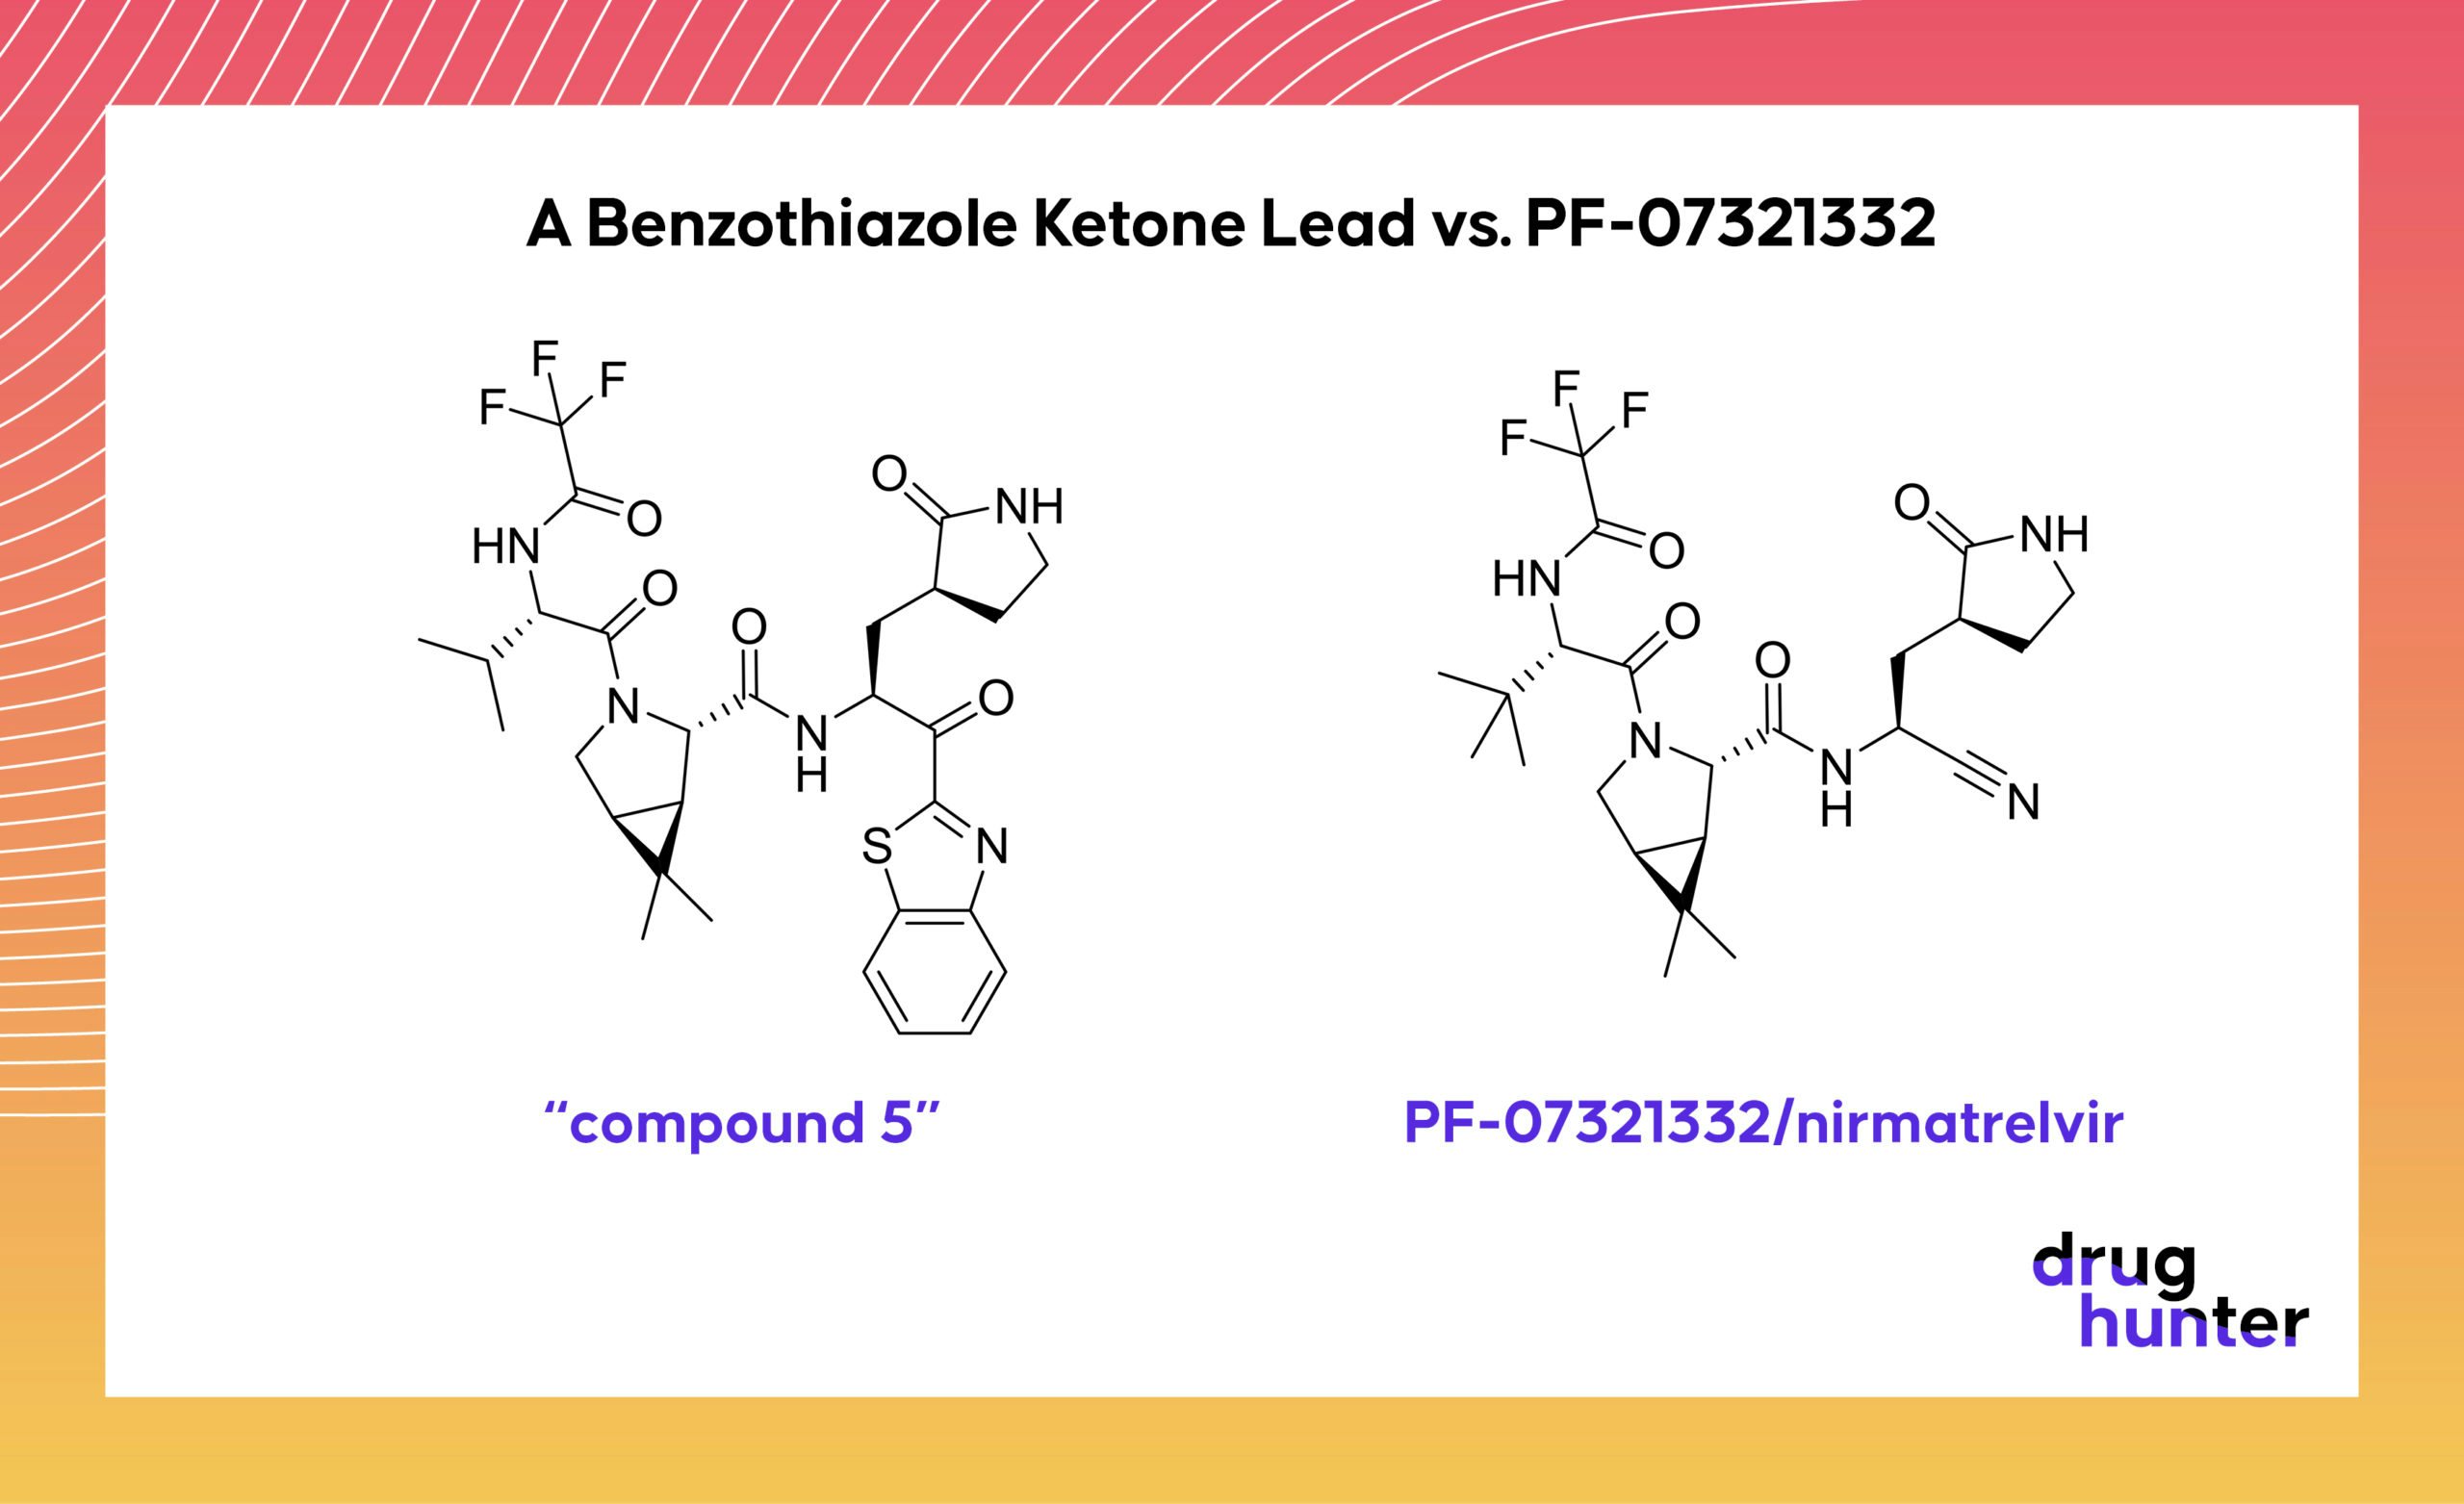 A Benzothiazole Ketone Lead vs. PF-073211332 "compound 5" PF-07321332/nirmatrelvir